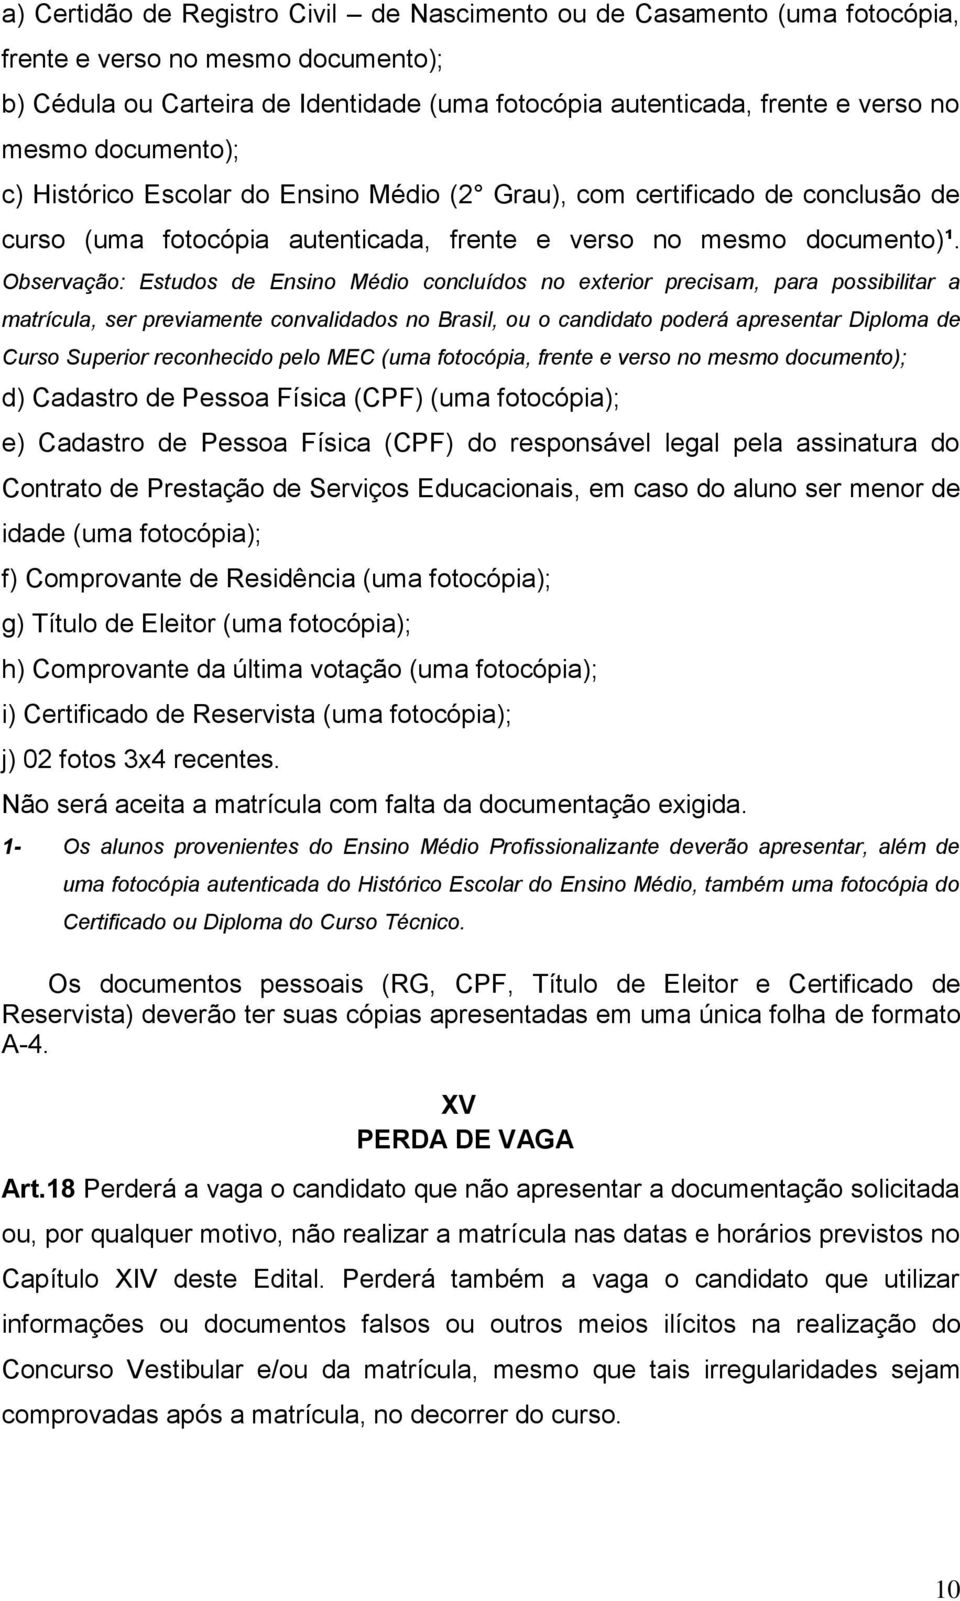 Observação: Estudos de Ensino Médio concluídos no exterior precisam, para possibilitar a matrícula, ser previamente convalidados no Brasil, ou o candidato poderá apresentar Diploma de Curso Superior